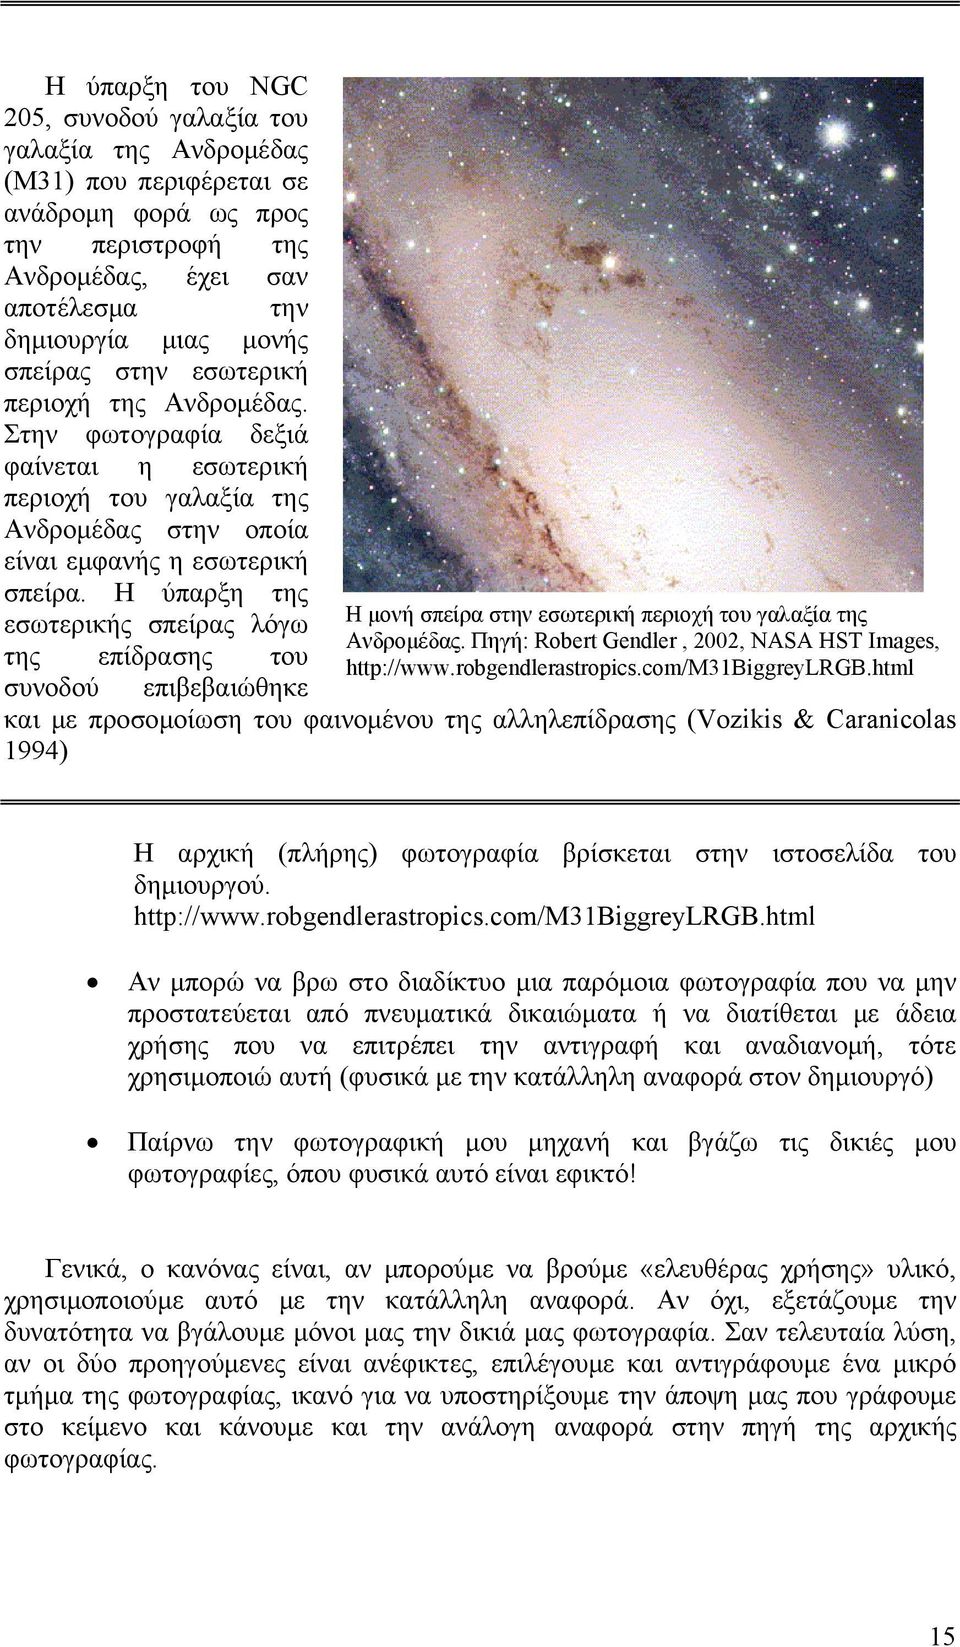 Η ύπαρξη της εσωτερικής σπείρας λόγω της επίδρασης του Η μονή σπείρα στην εσωτερική περιοχή του γαλαξία της Ανδρομέδας. Πηγή: Robert Gendler, 2002, NASA HST Images, http://www.robgendlerastropics.